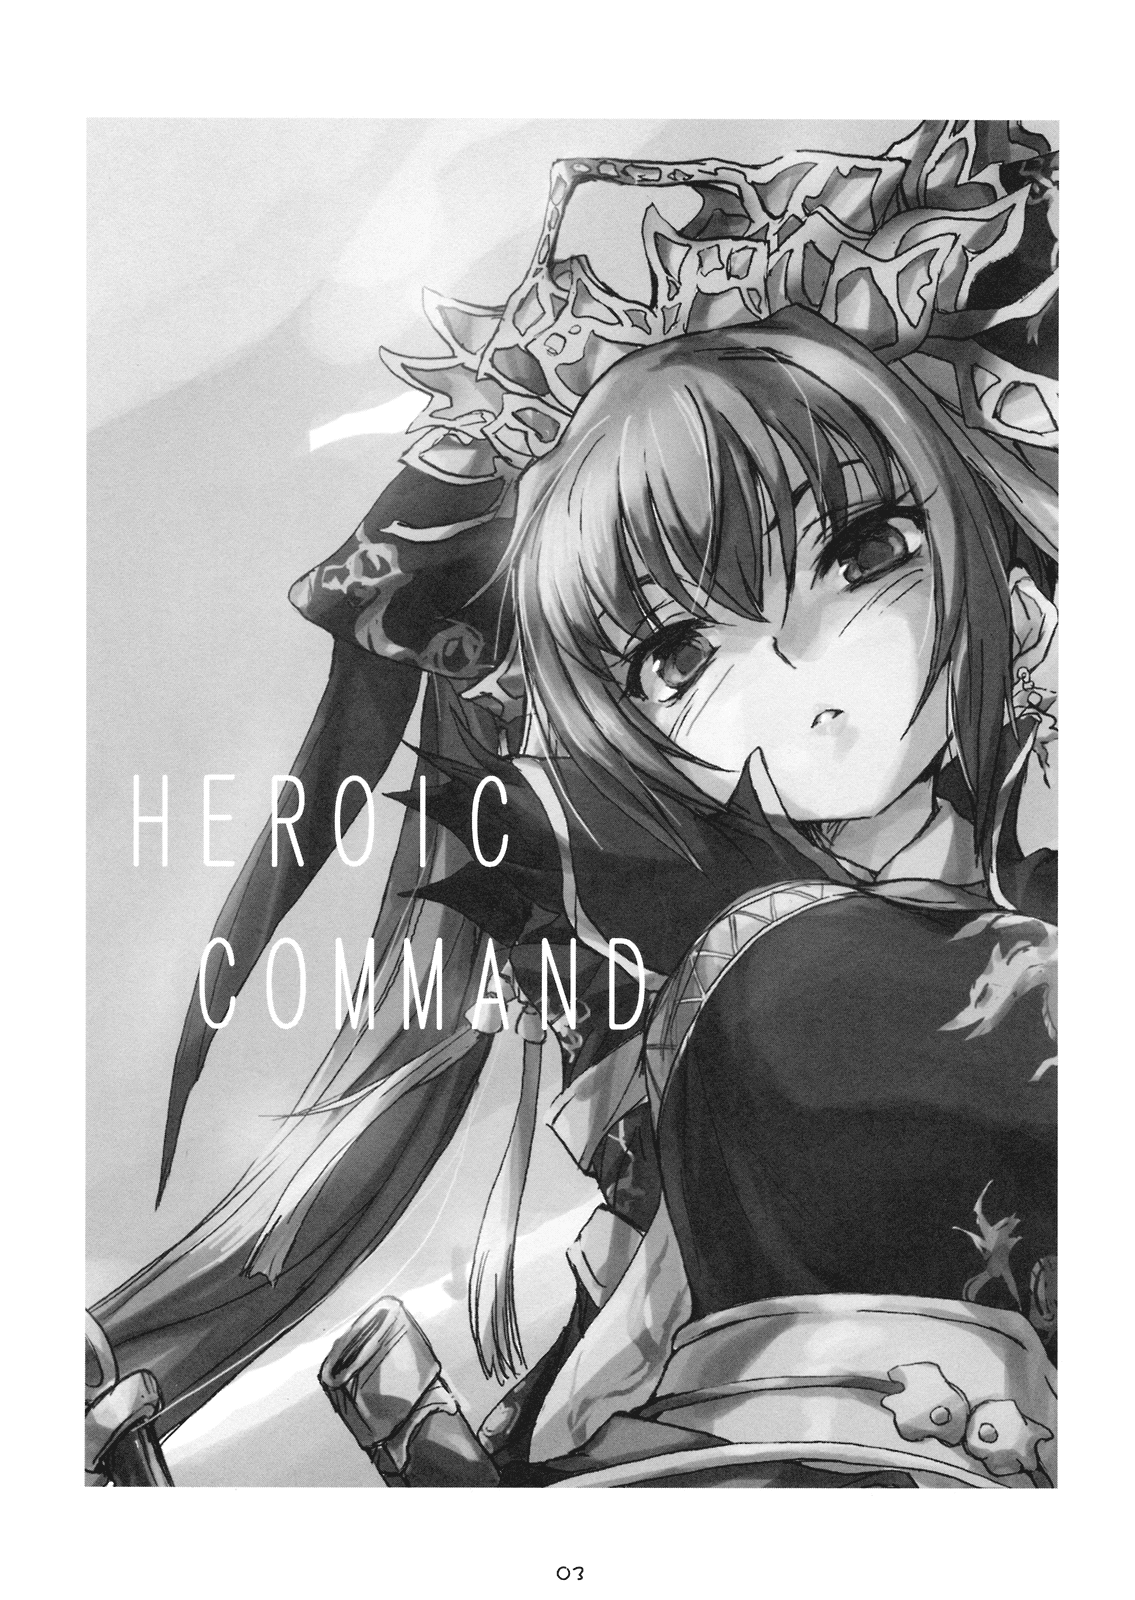 [ゴス屋 (松倉ねむ)] HEROIC COMMAND Beta Edition (三国志大戦)